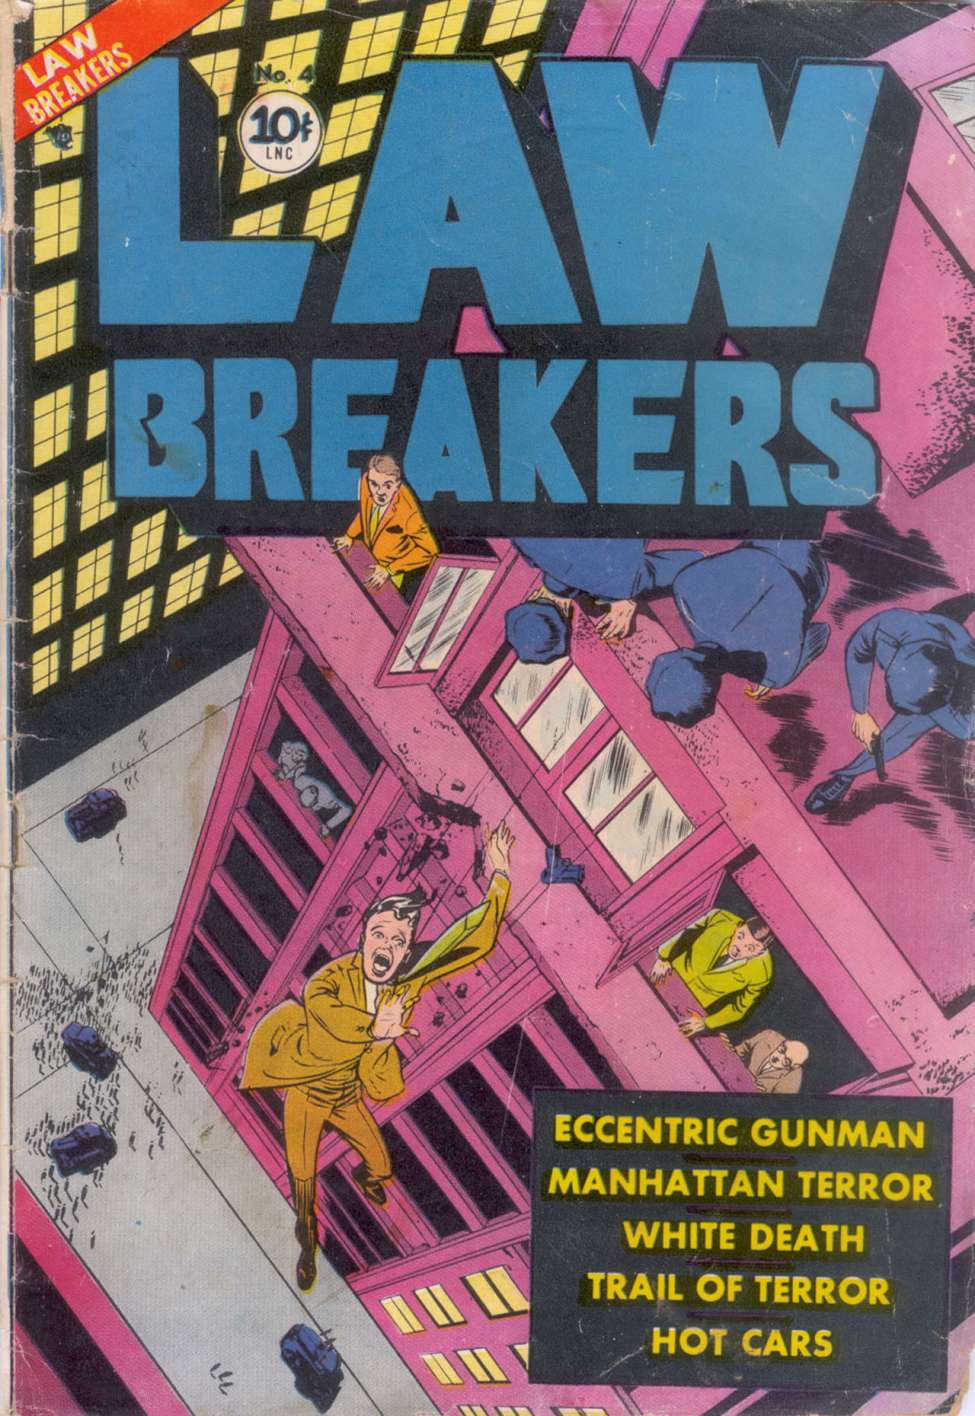 Book Cover For Lawbreakers 4